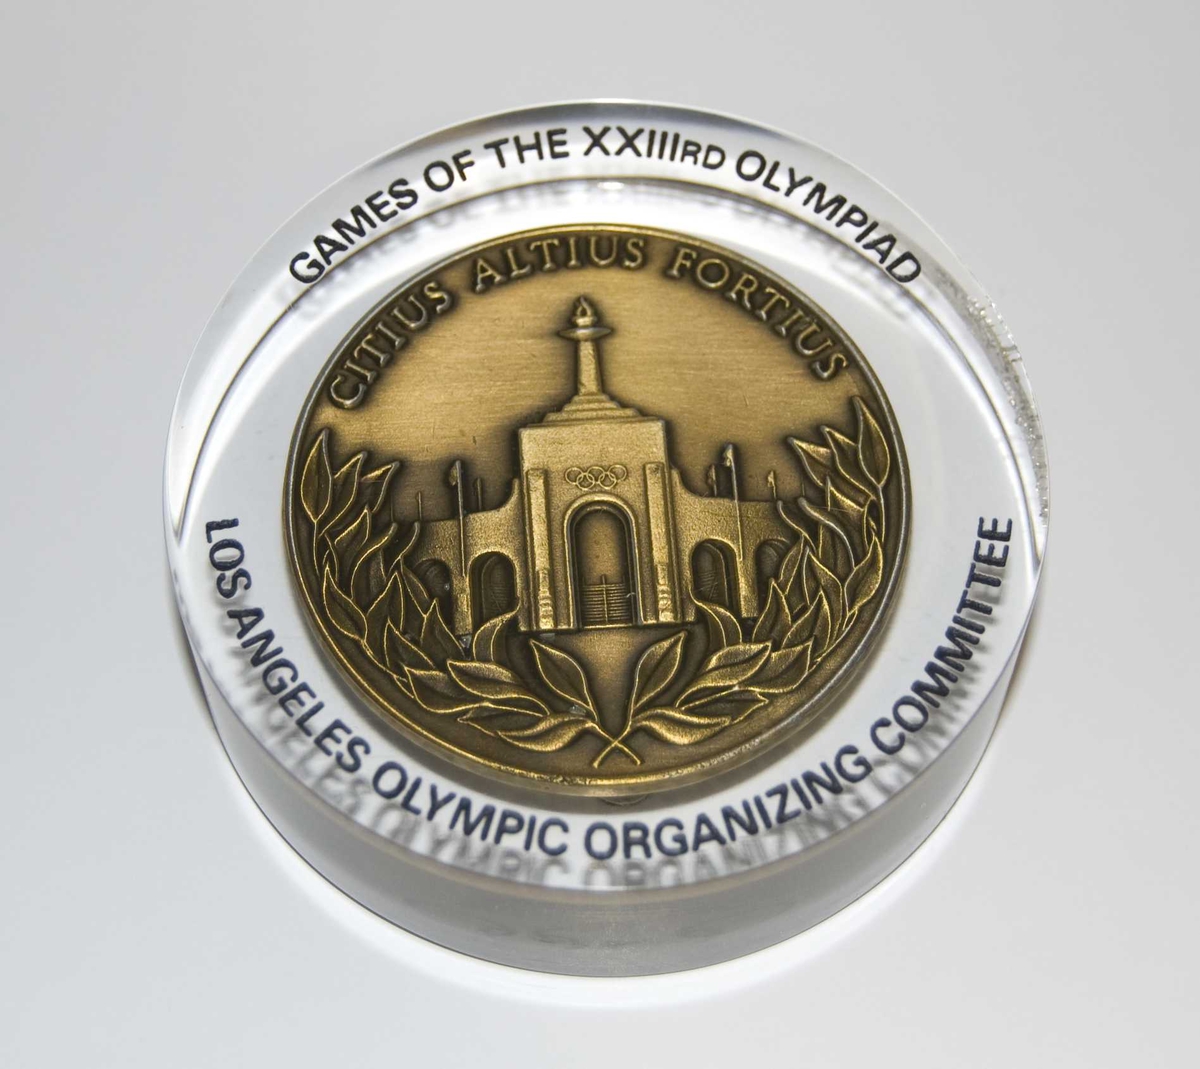 Gullfarget medalje med emblemet for de olympiske sommerleker i Los Angeles i 1984 og motiv av det olympiske stadion i Los Angeles. Medaljen er innstøpt i pleksiglass.